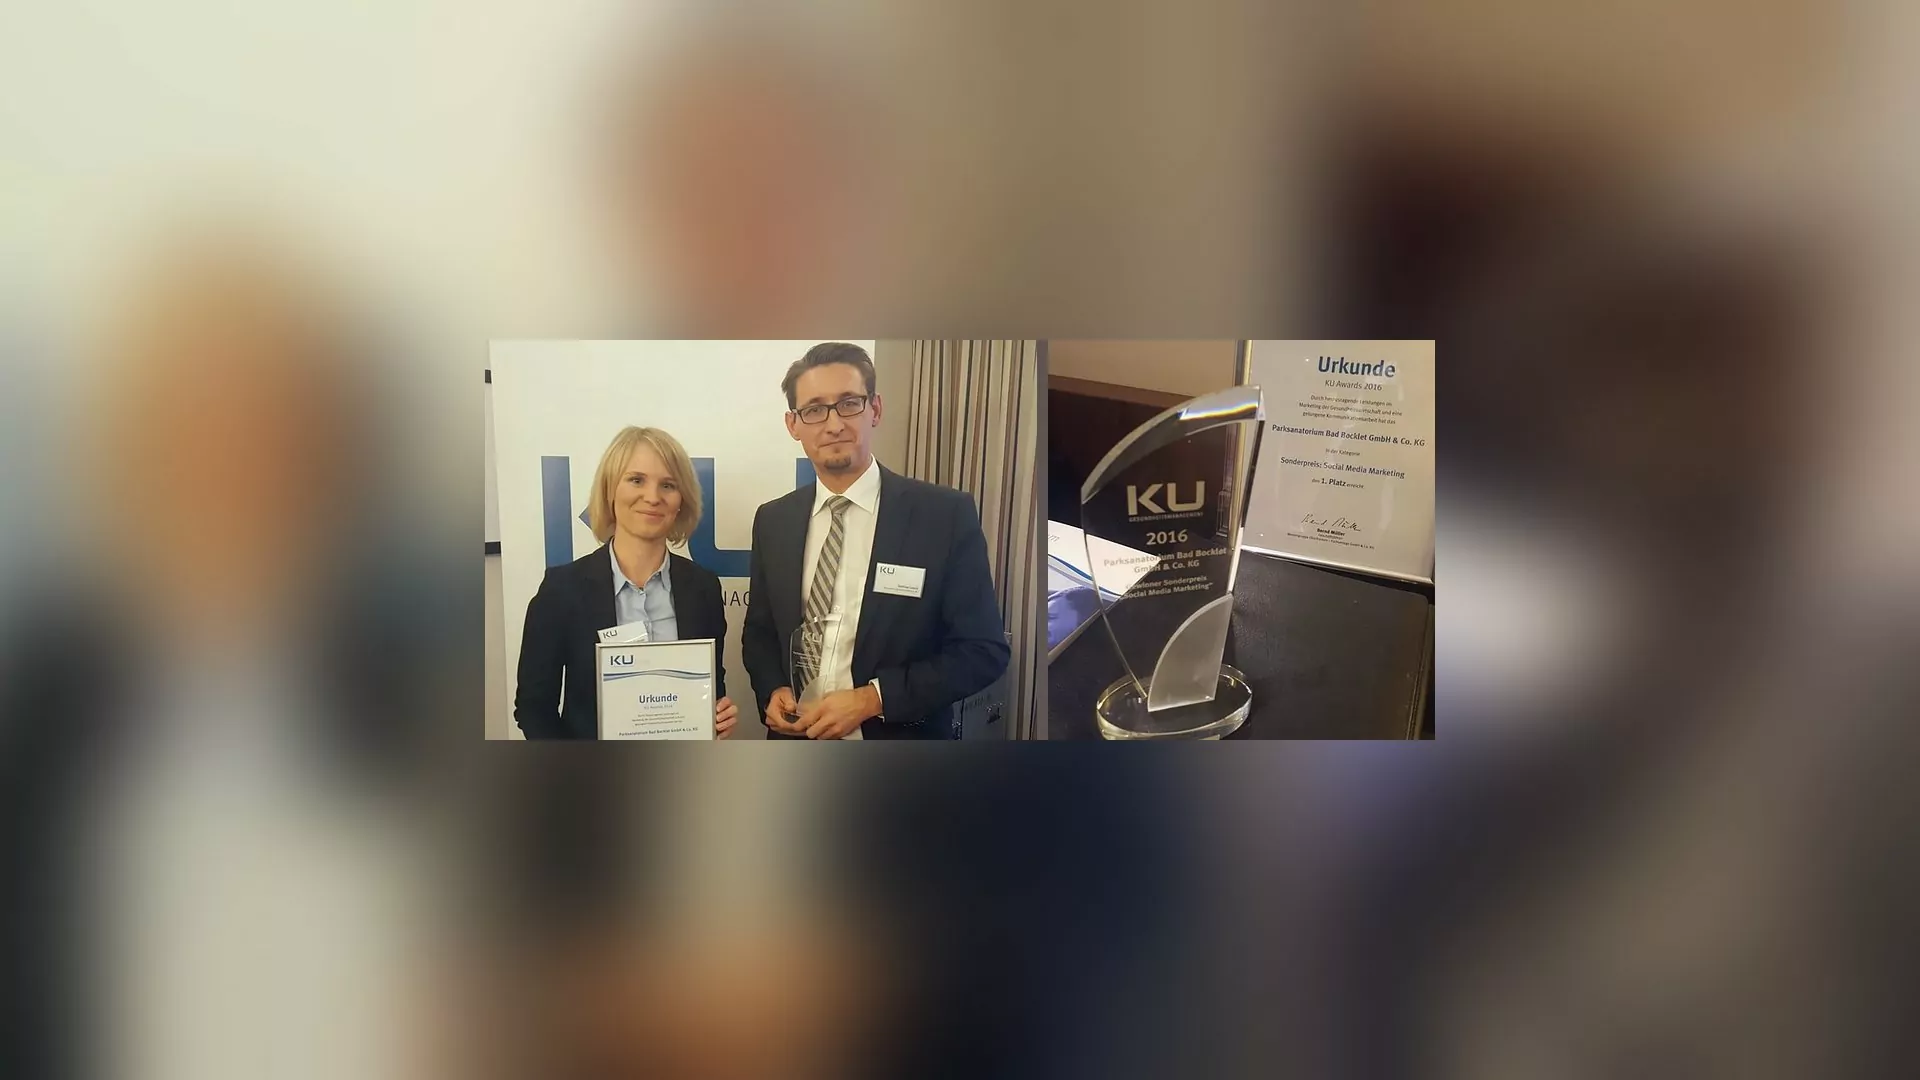 Frau Schmidt (Leiterin Belegungsabteilung) und Herr Lutsch (Verwaltungsleiter) bei der Annahme des gewonnenen KU Award 2016.